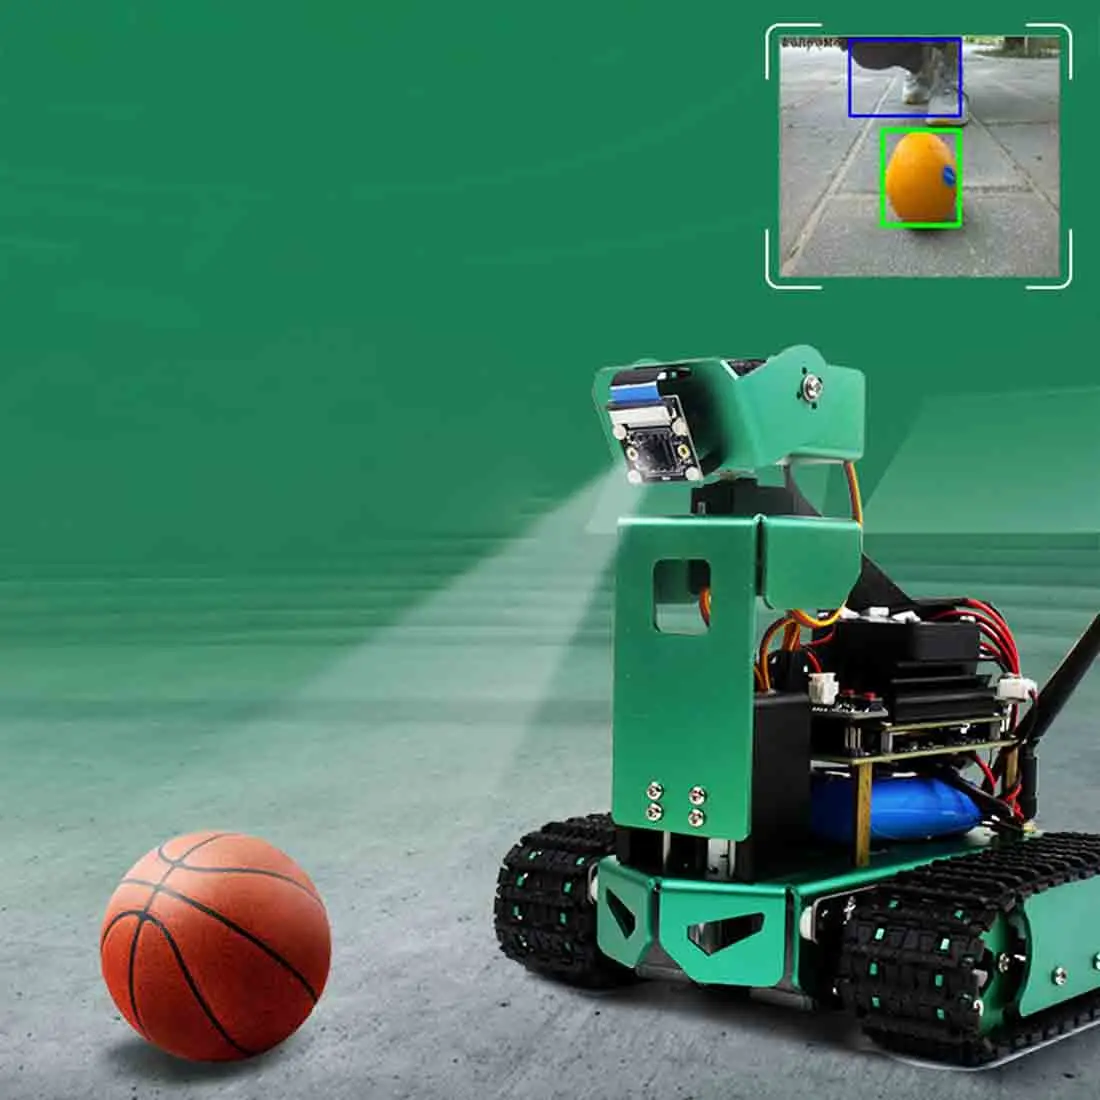 Искусственный интеллект Автомобиль DIY 3DOF робот автомобиль комплект с/без макетной платы для Jetson Nano(регулируемая высота) образовательные